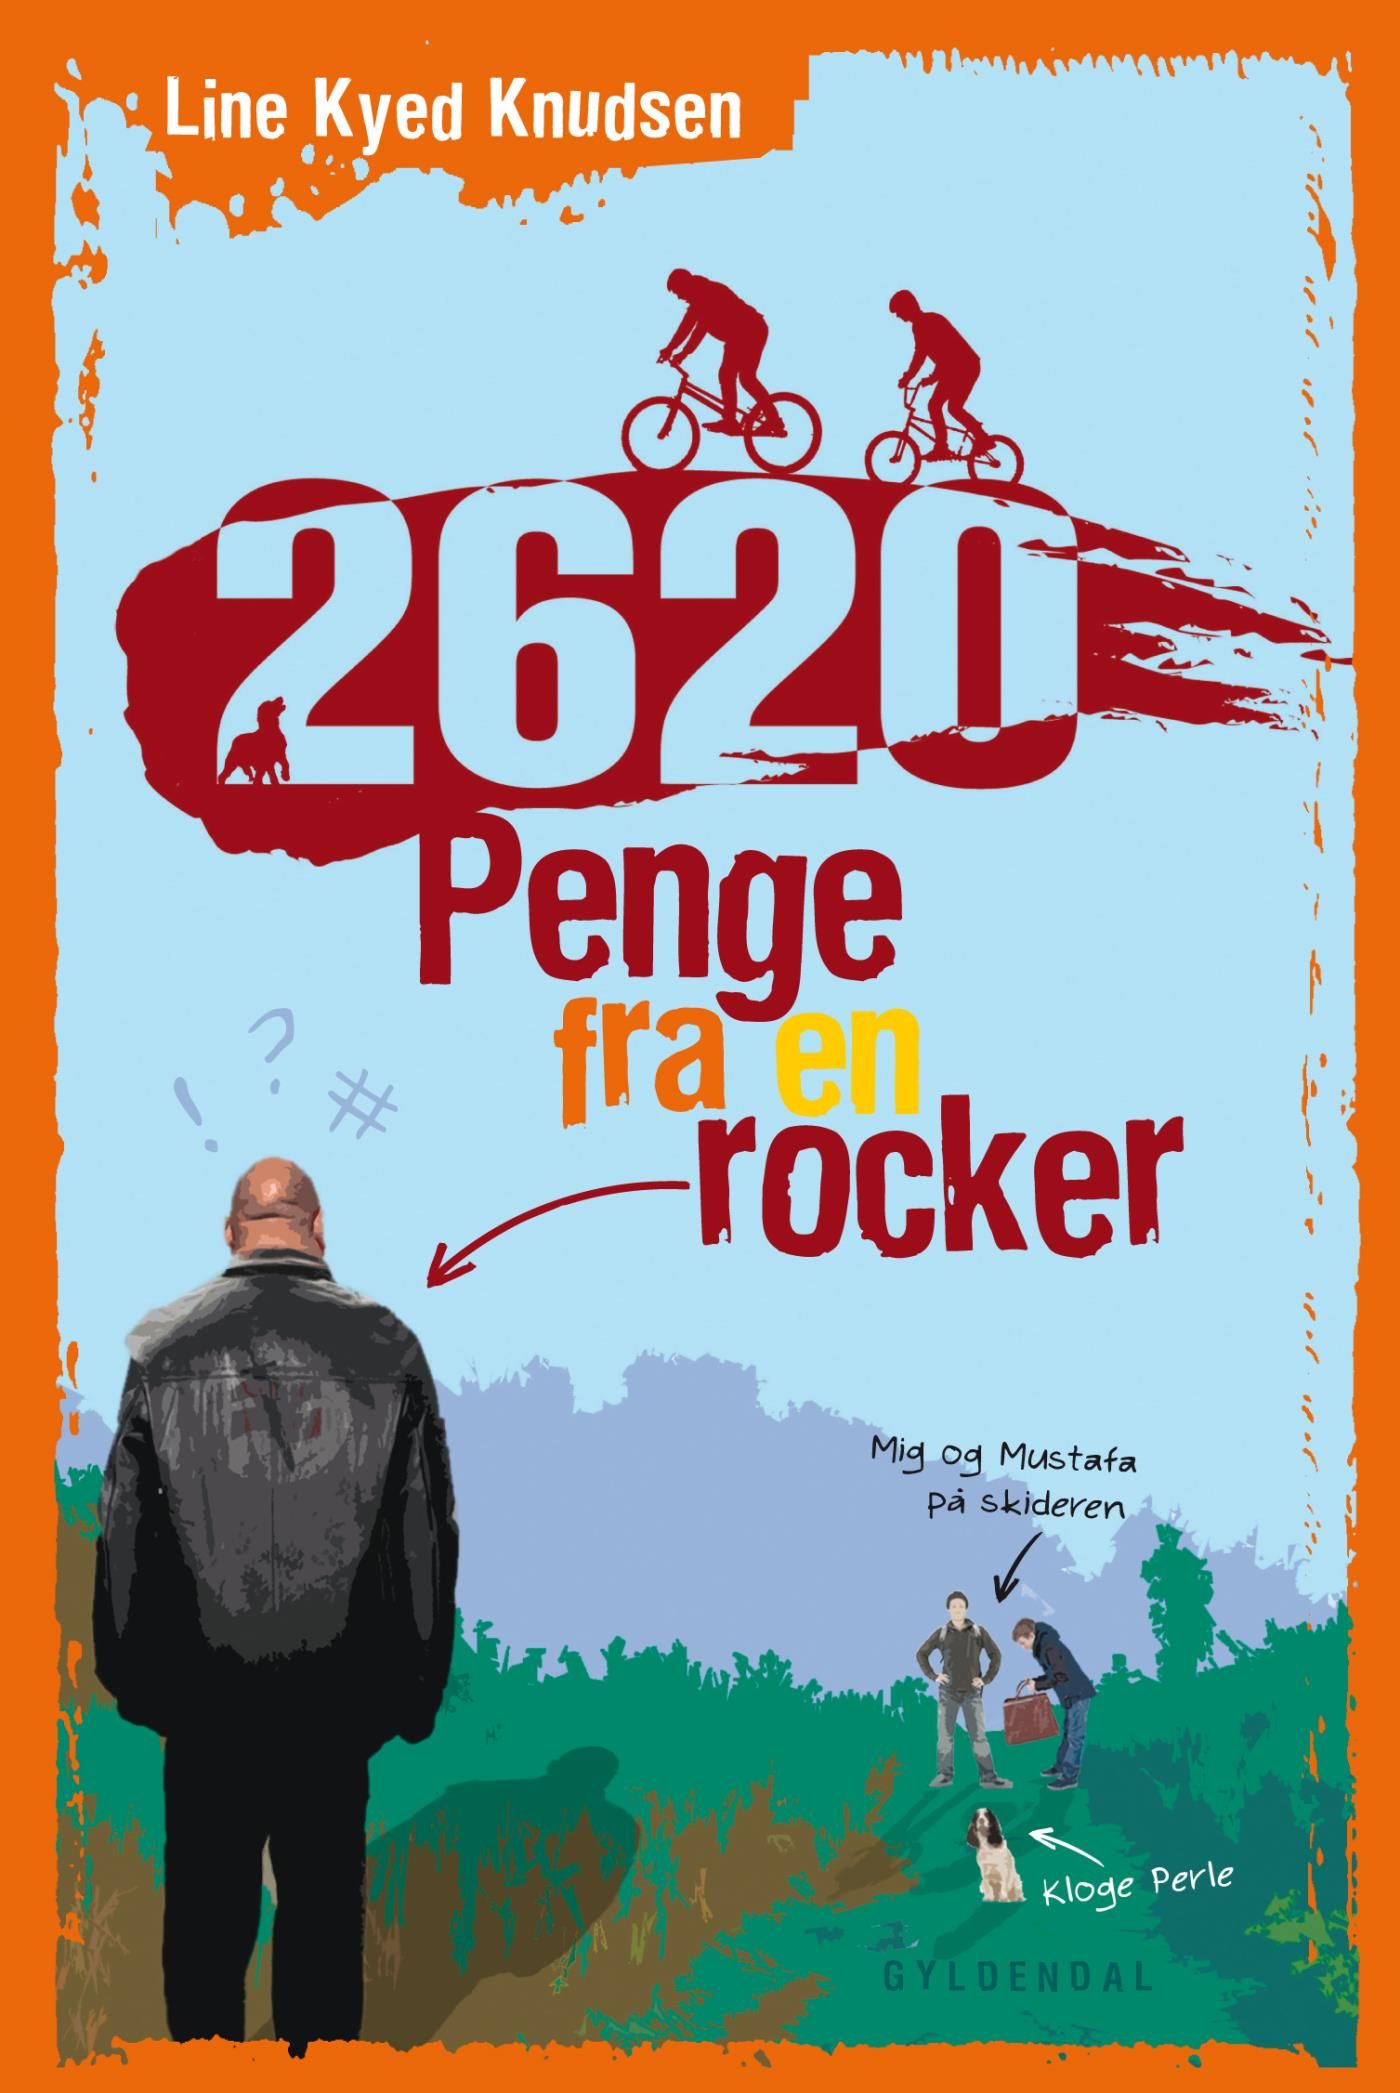 2620 1 - Penge fra en rocker, e-bok av Line Kyed Knudsen